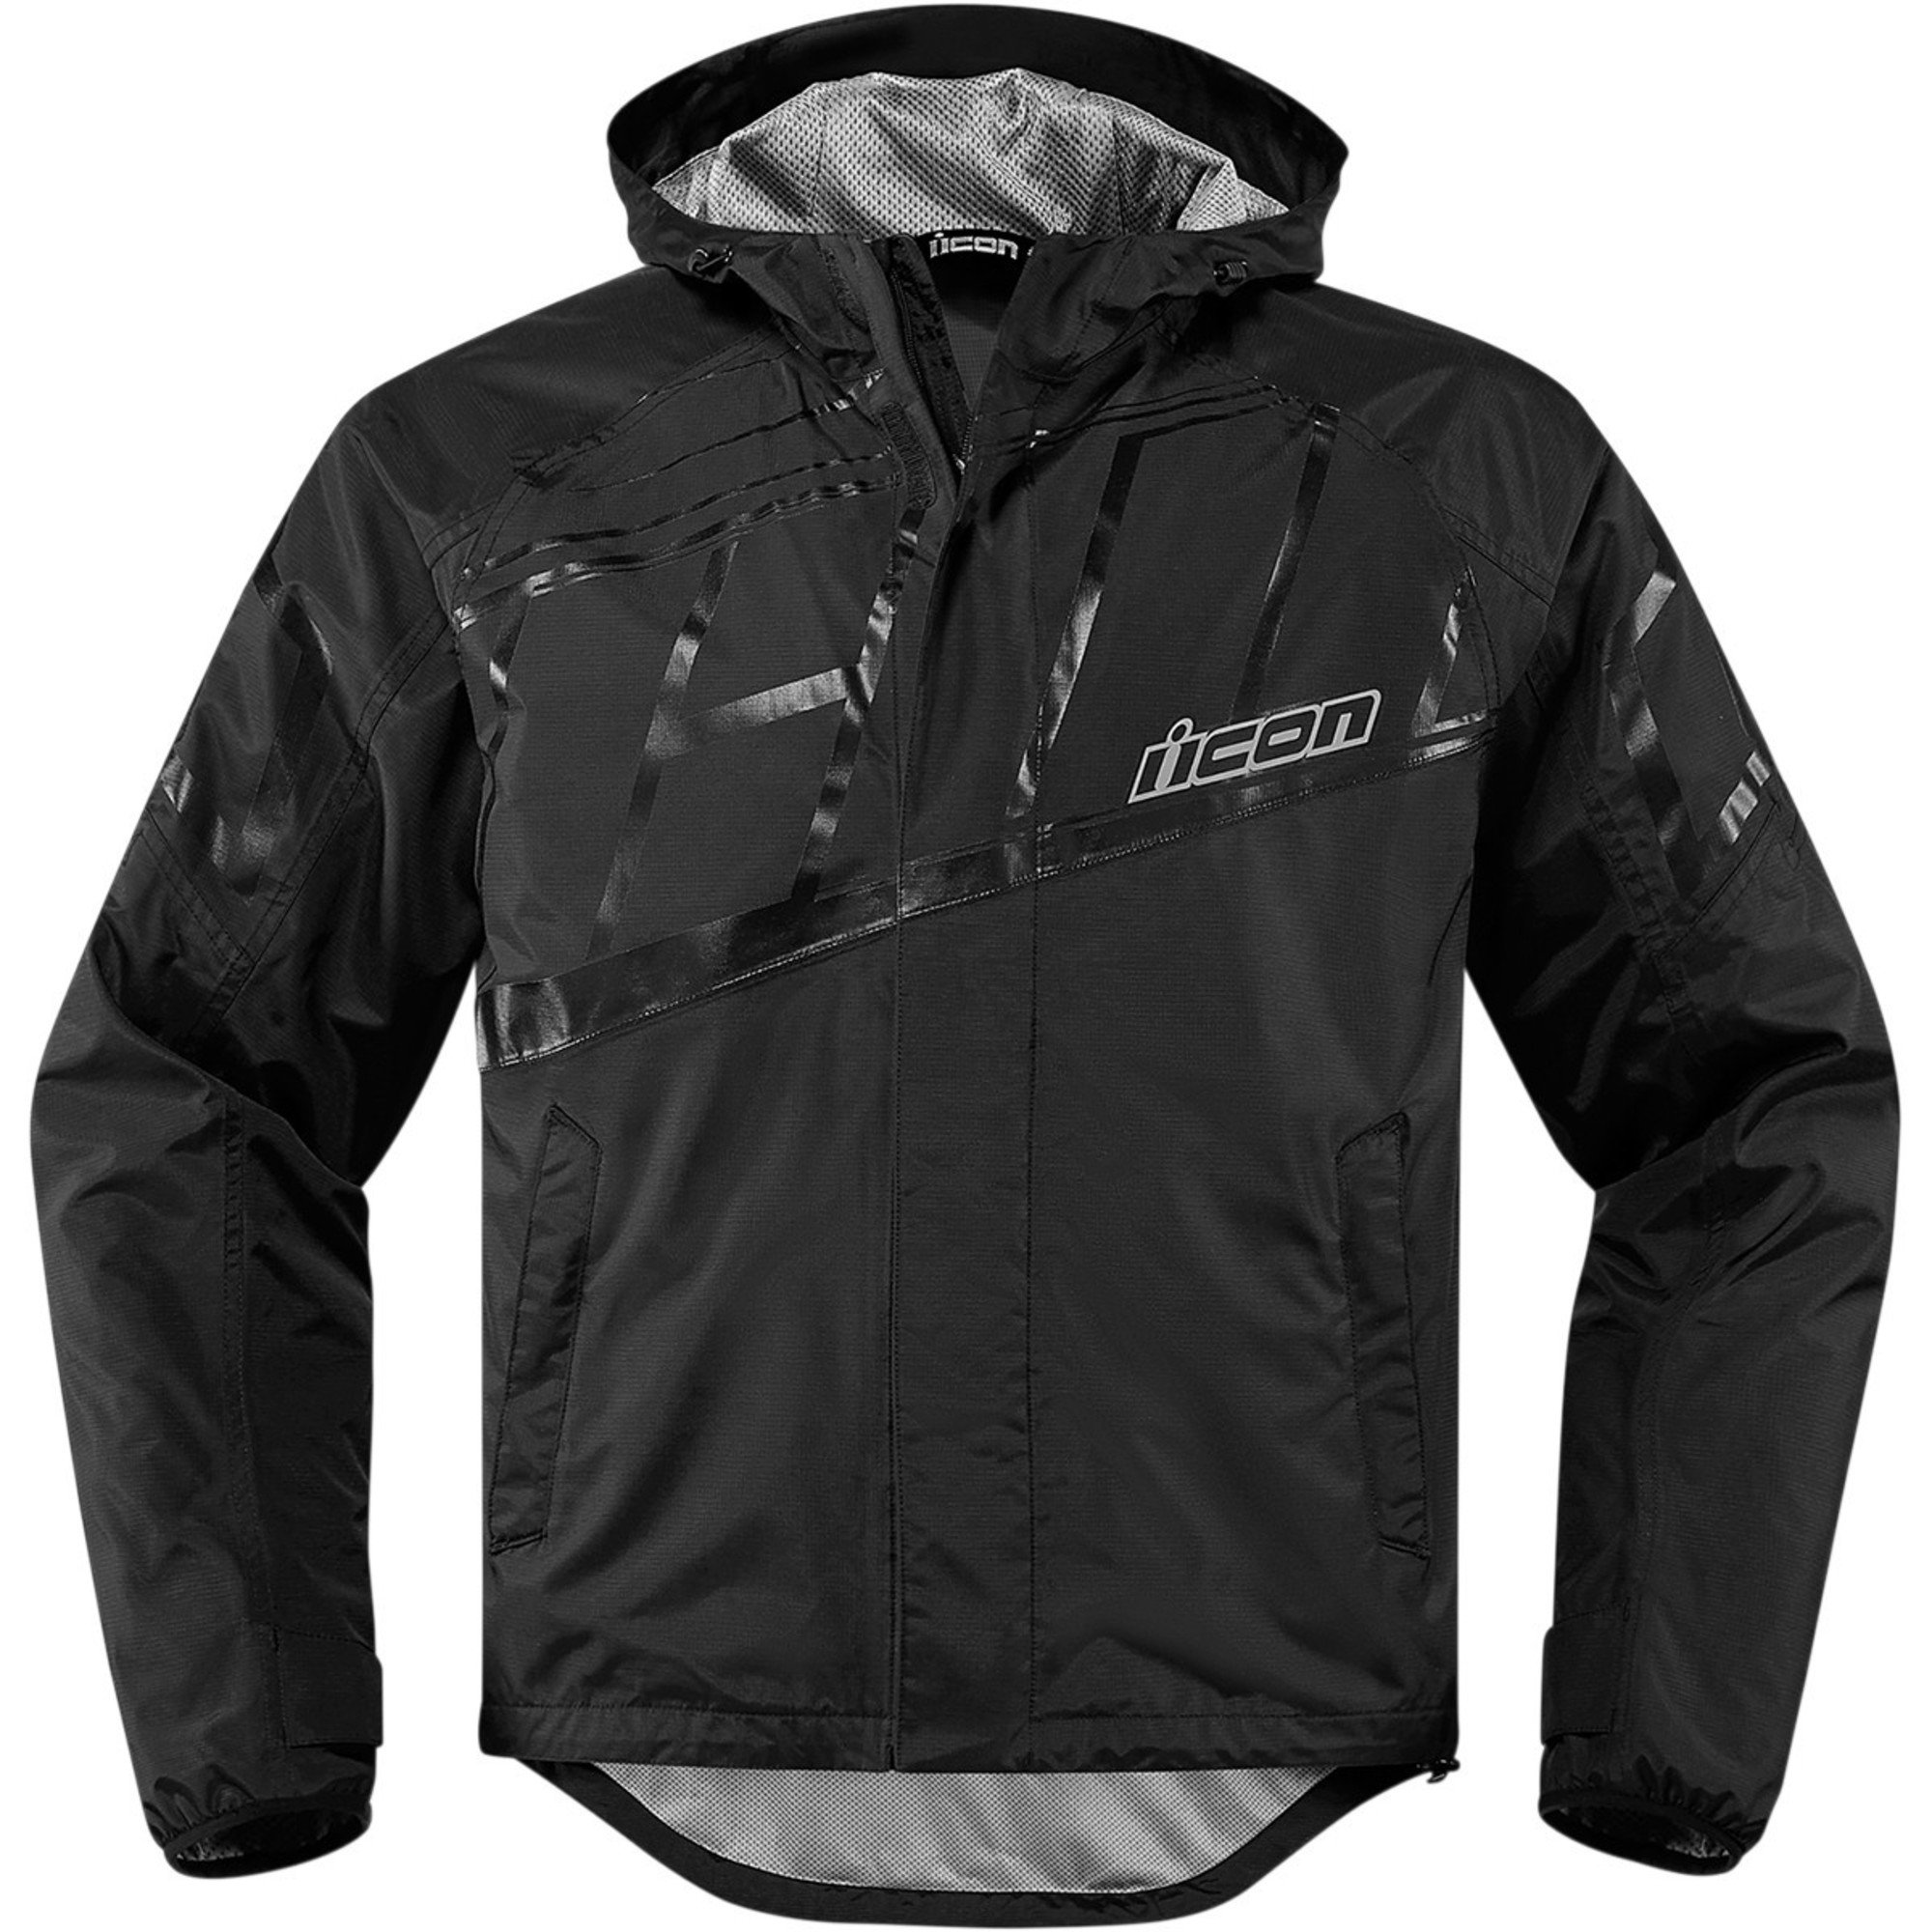 icon jackets rain gear for men pdx 2 waterproof